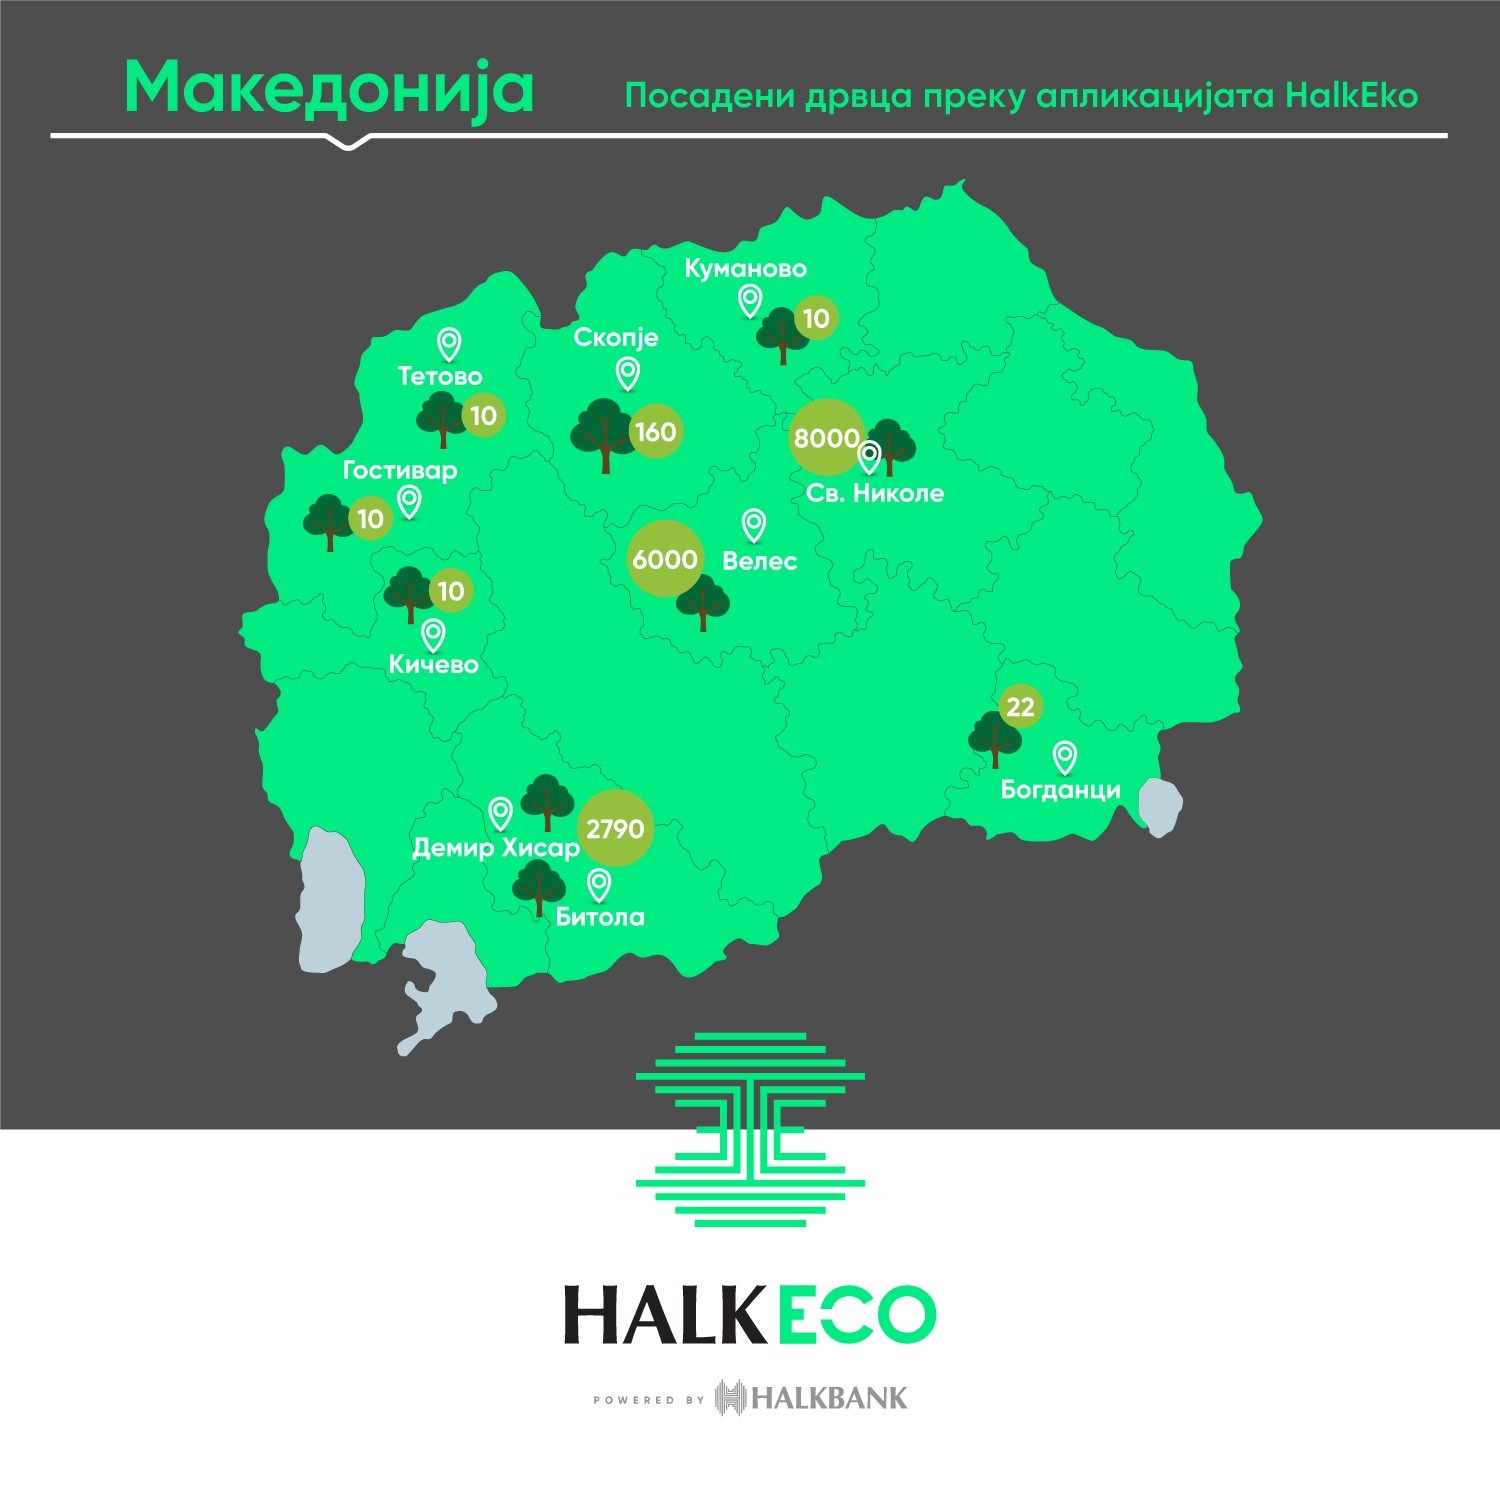 Халкбанк брои над 17.000 донирани садници низ македонските градови во тек на една година